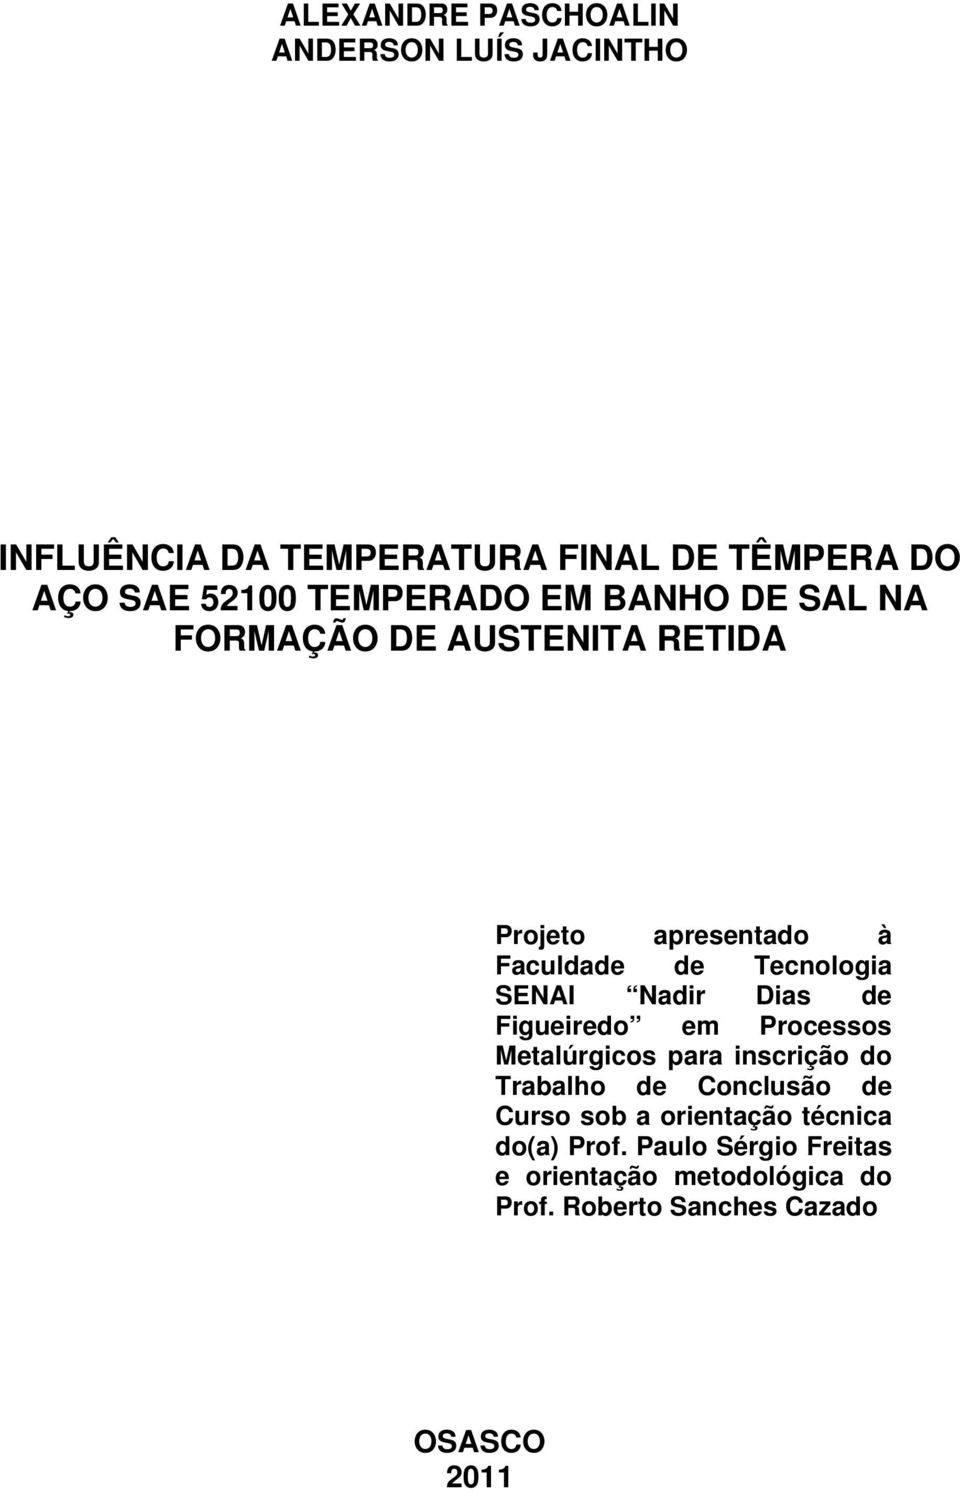 Nadir Dias de Figueiredo em Processos Metalúrgicos para inscrição do Trabalho de Conclusão de Curso sob a